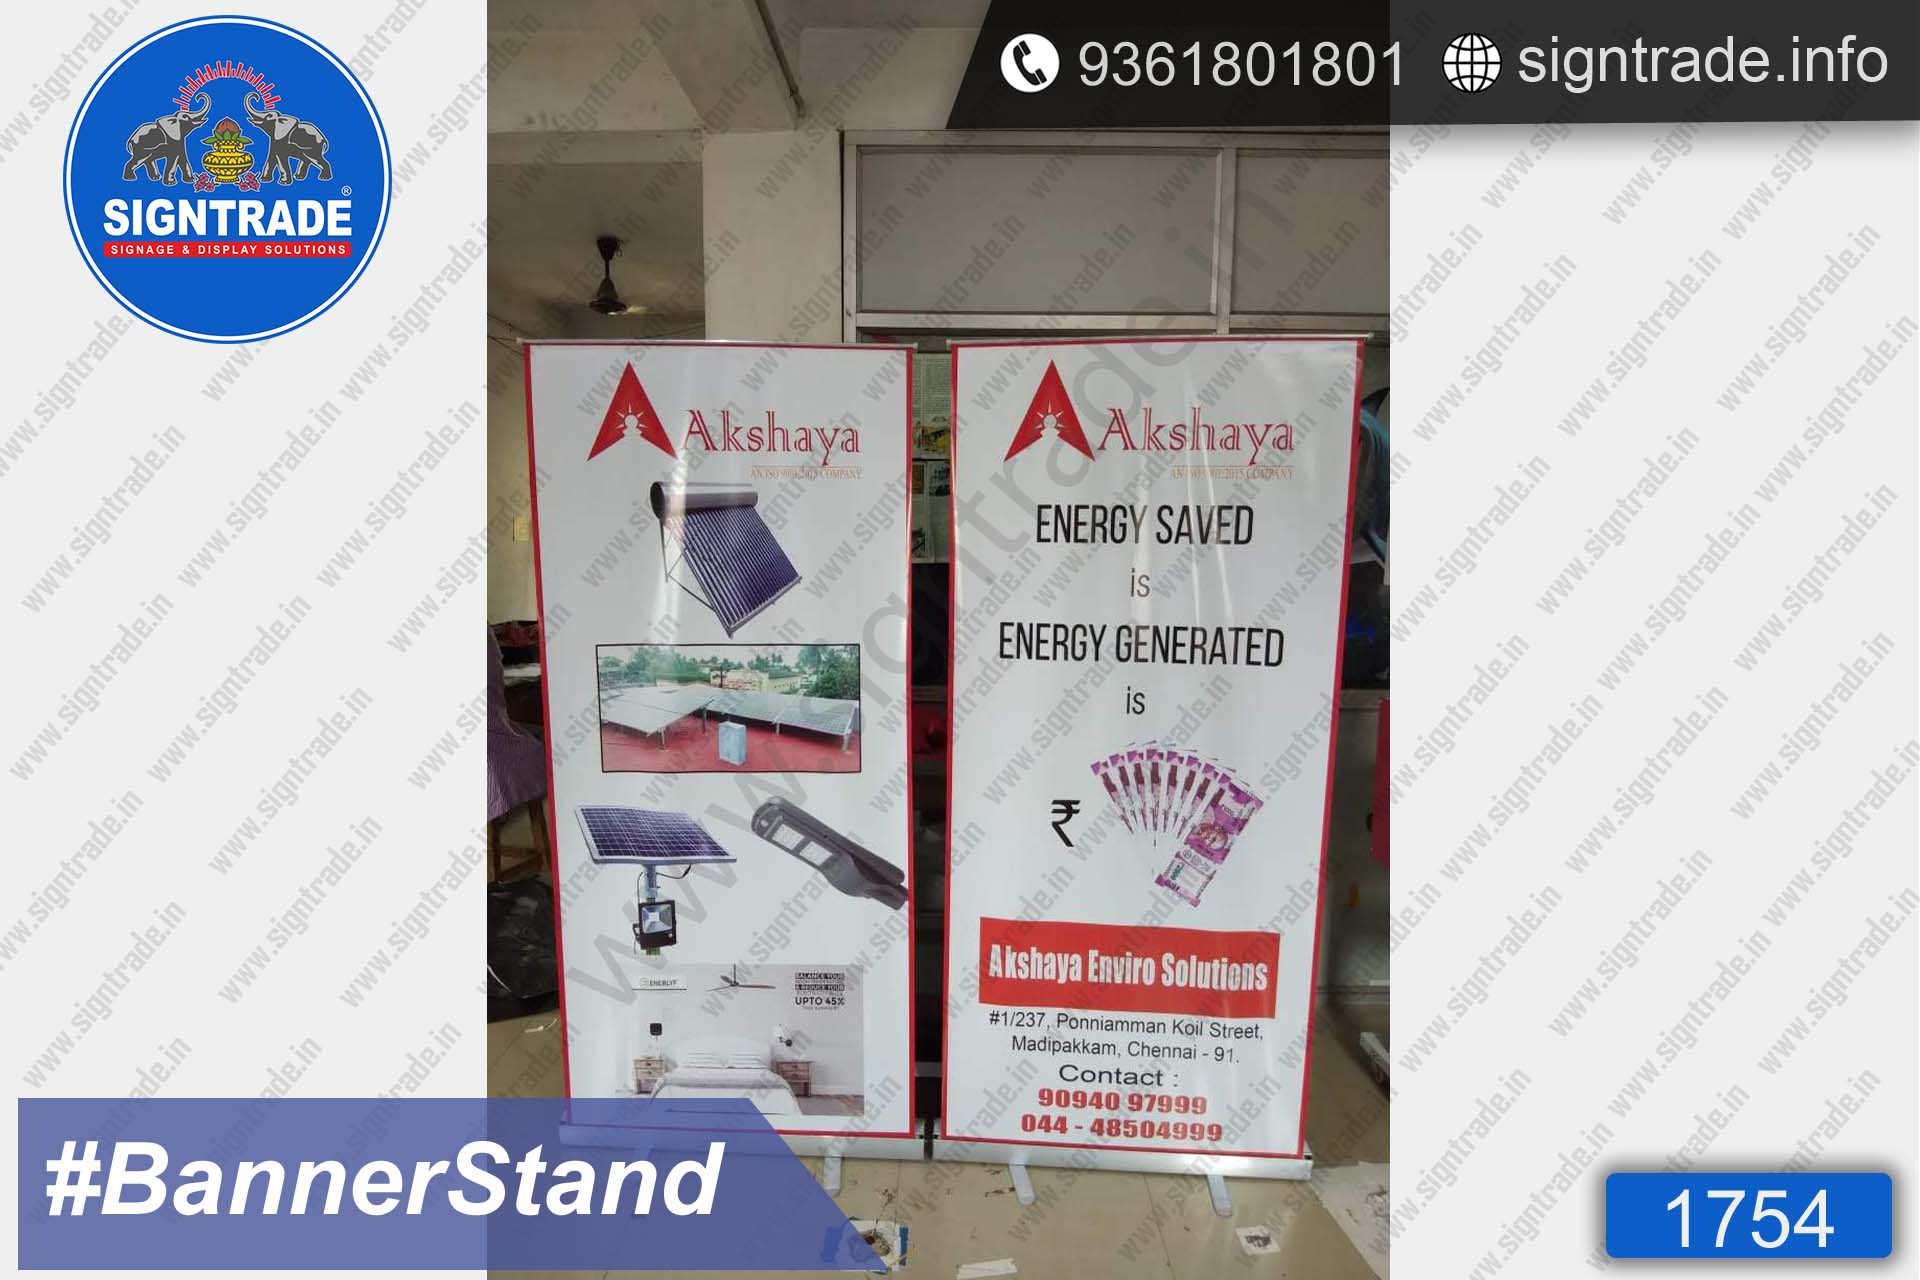 akshaya enviro solutions banner stand